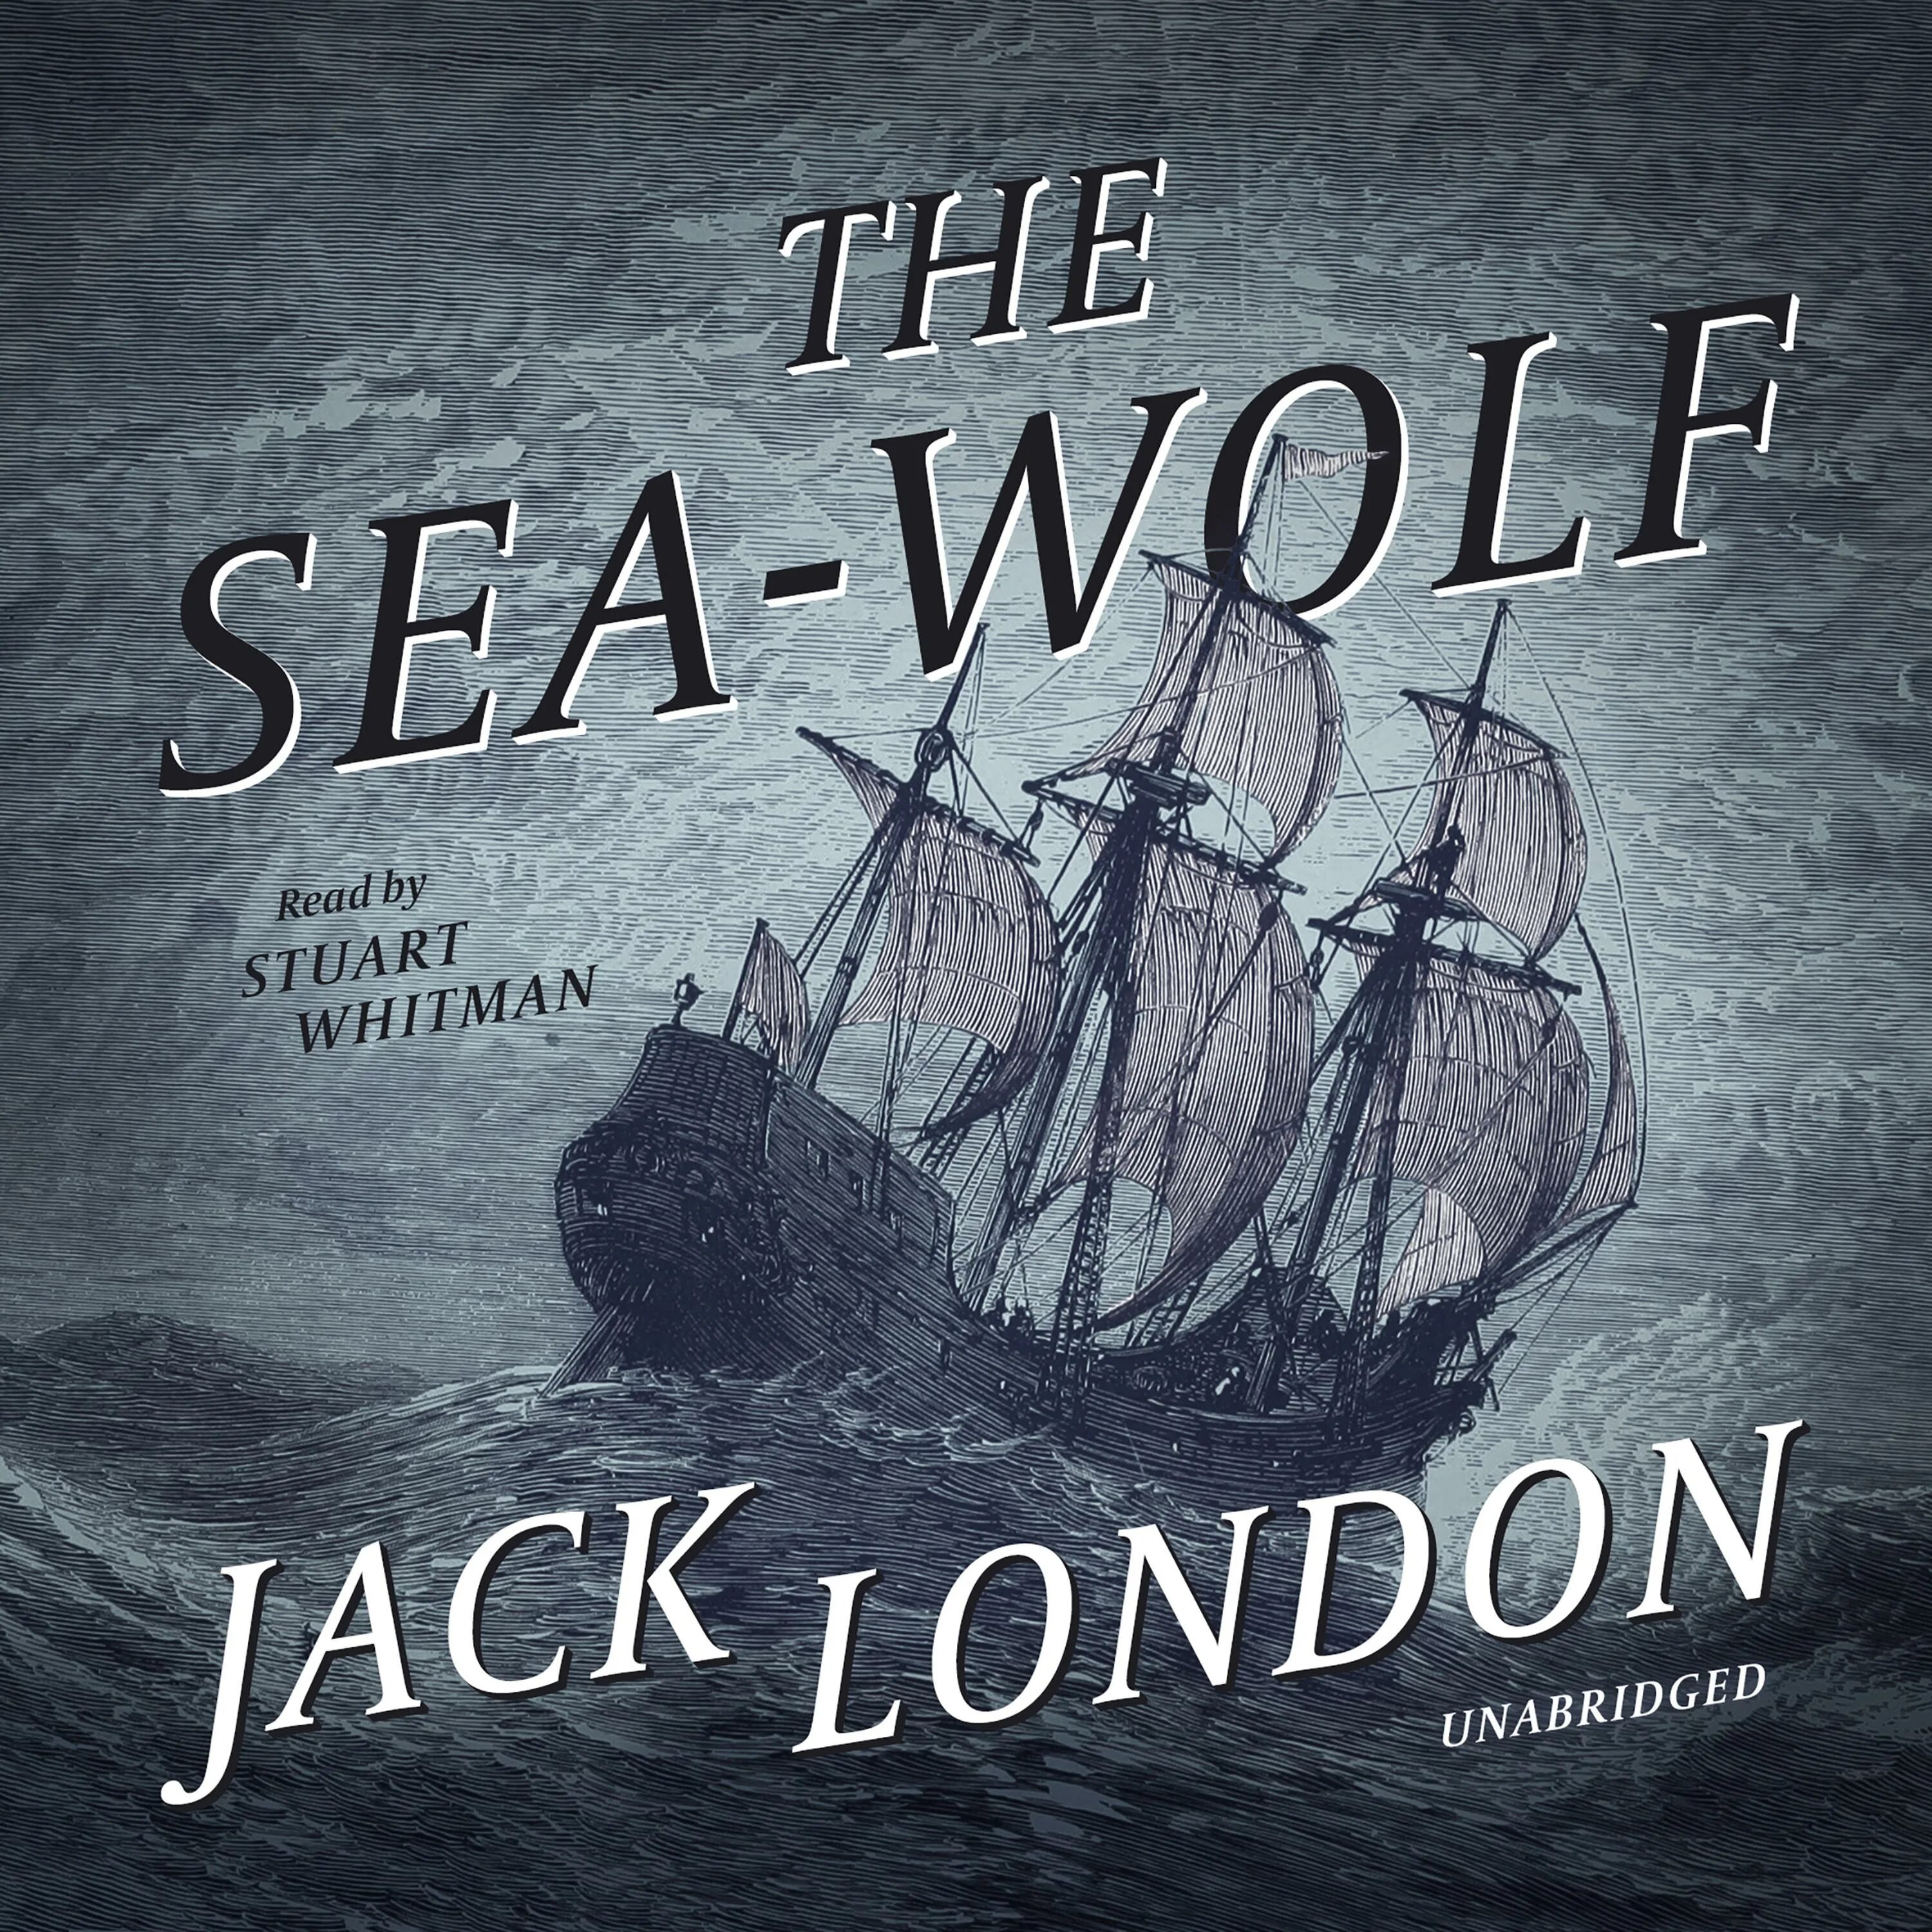 Джек Лондон "морской волк". Морской волк Джек Лондон книга. Морской волк Джек Лондон обложка. Морской волк Джек Лондон 2009 Постер. Слушать аудиокниги савина морской волк